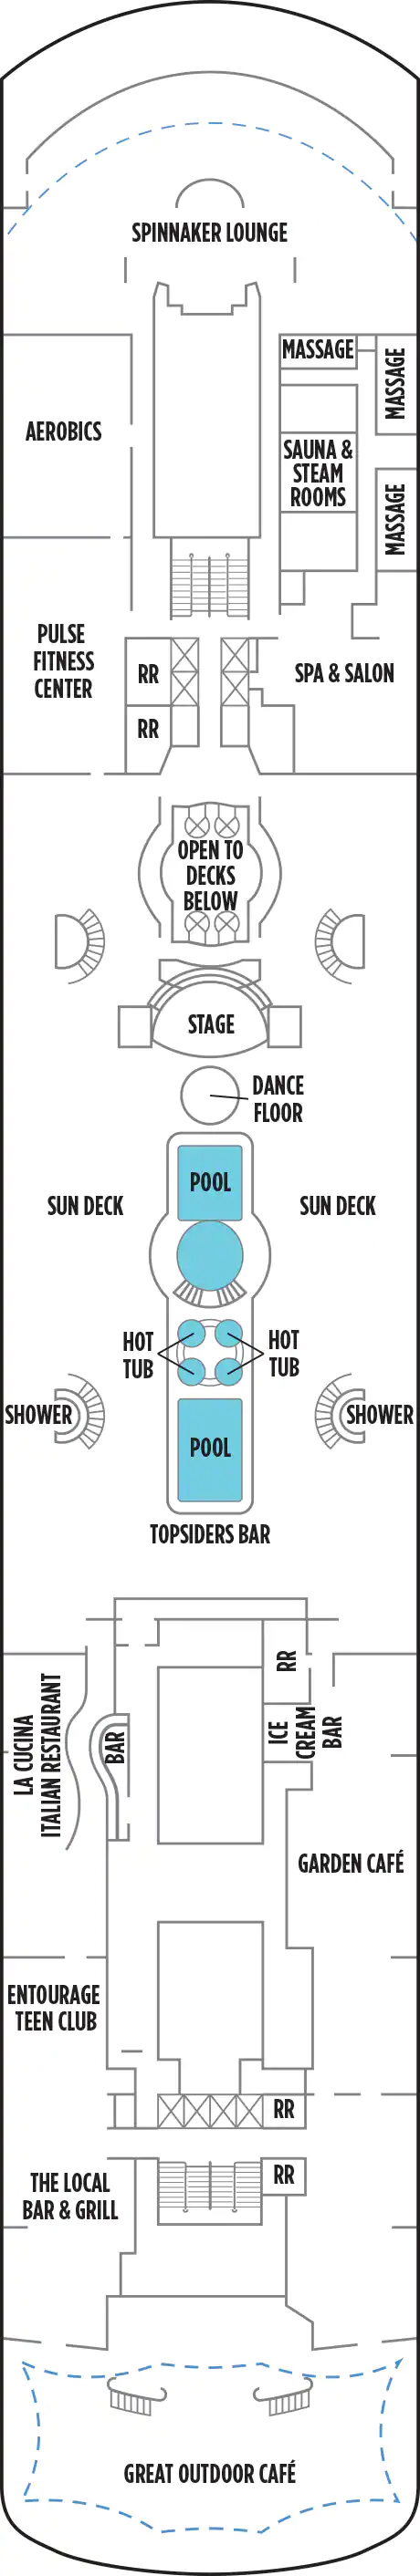 Pool-Deck 11 (Deck Nr. 11)